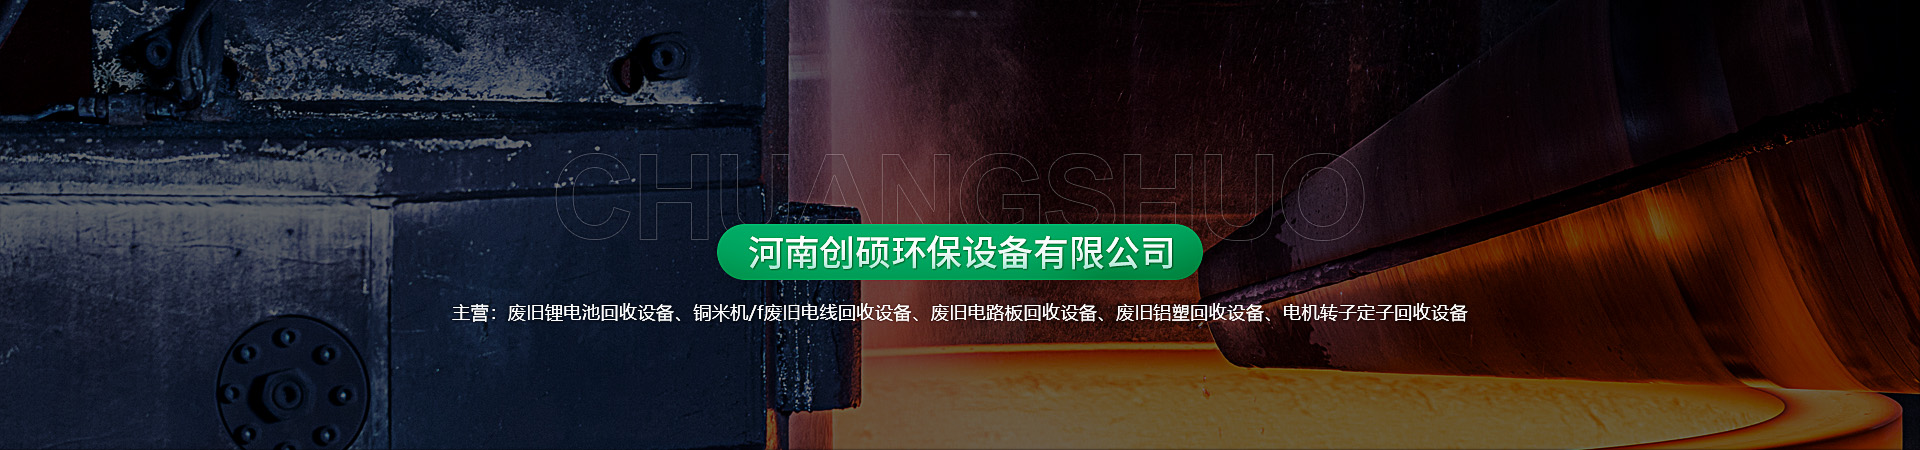 拍卖成功！重庆市某企业的废旧铝电缆一批以308万元成交